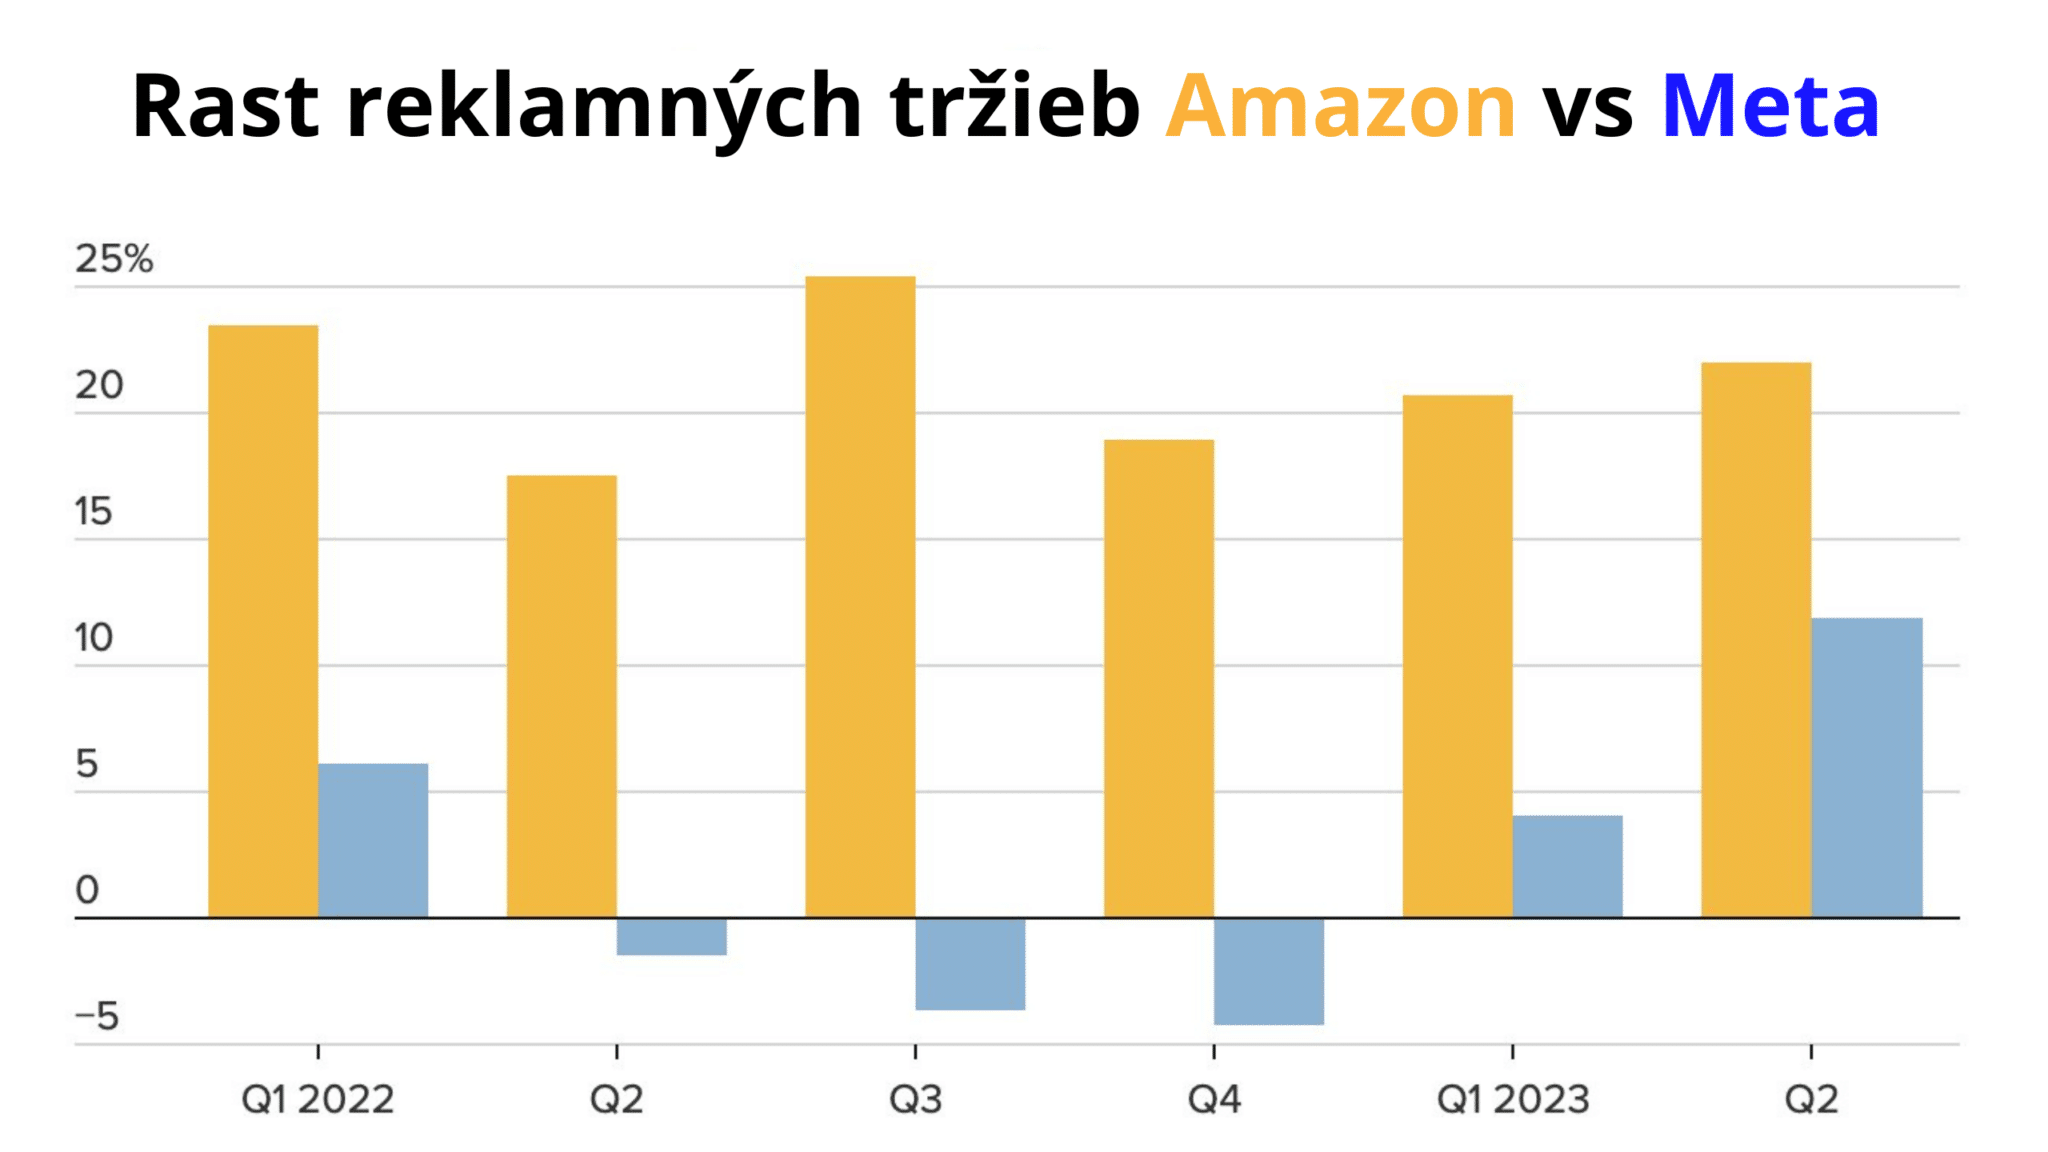 Amazon tržby